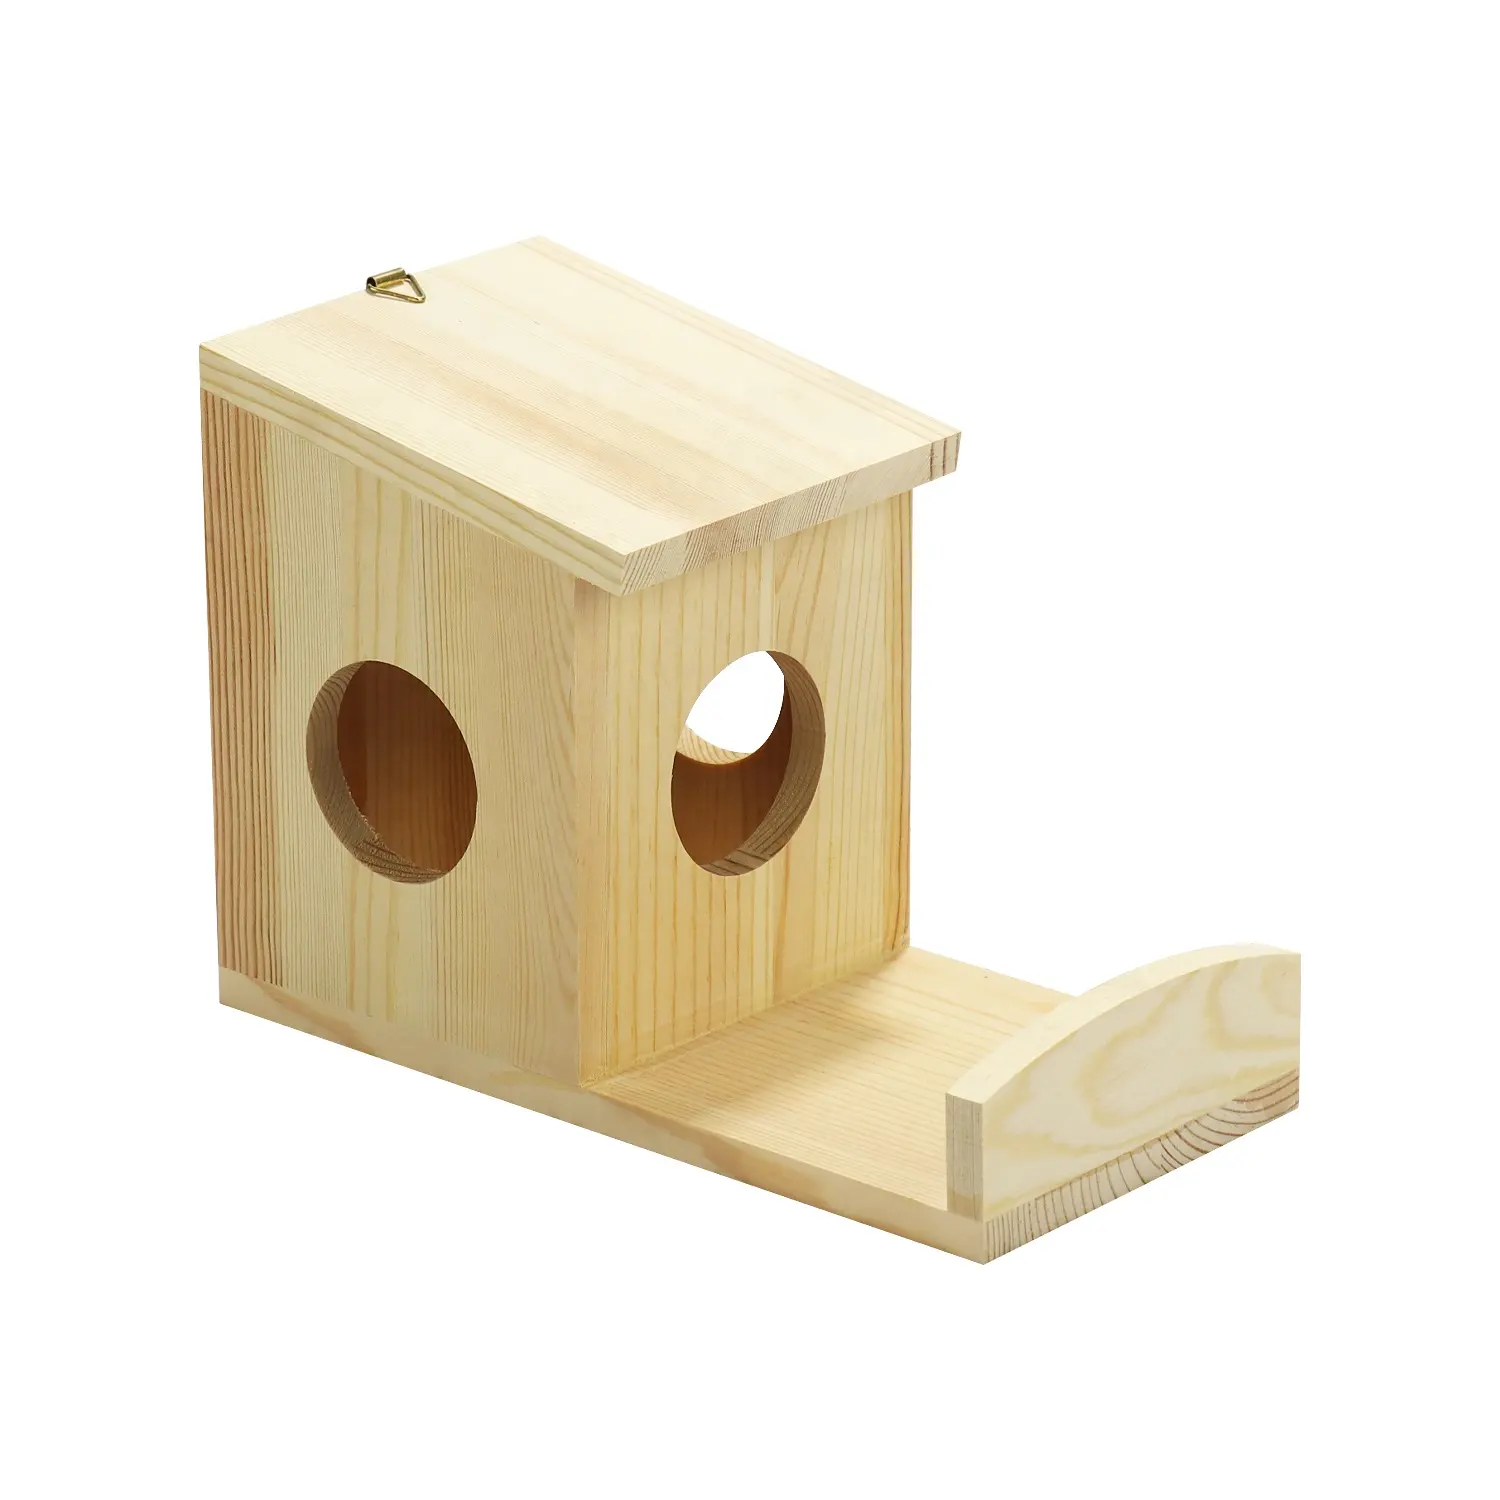 Maison de nid d'oiseau en bois en vrac bon marché peut bricolage avec des autocollants ou des dessins